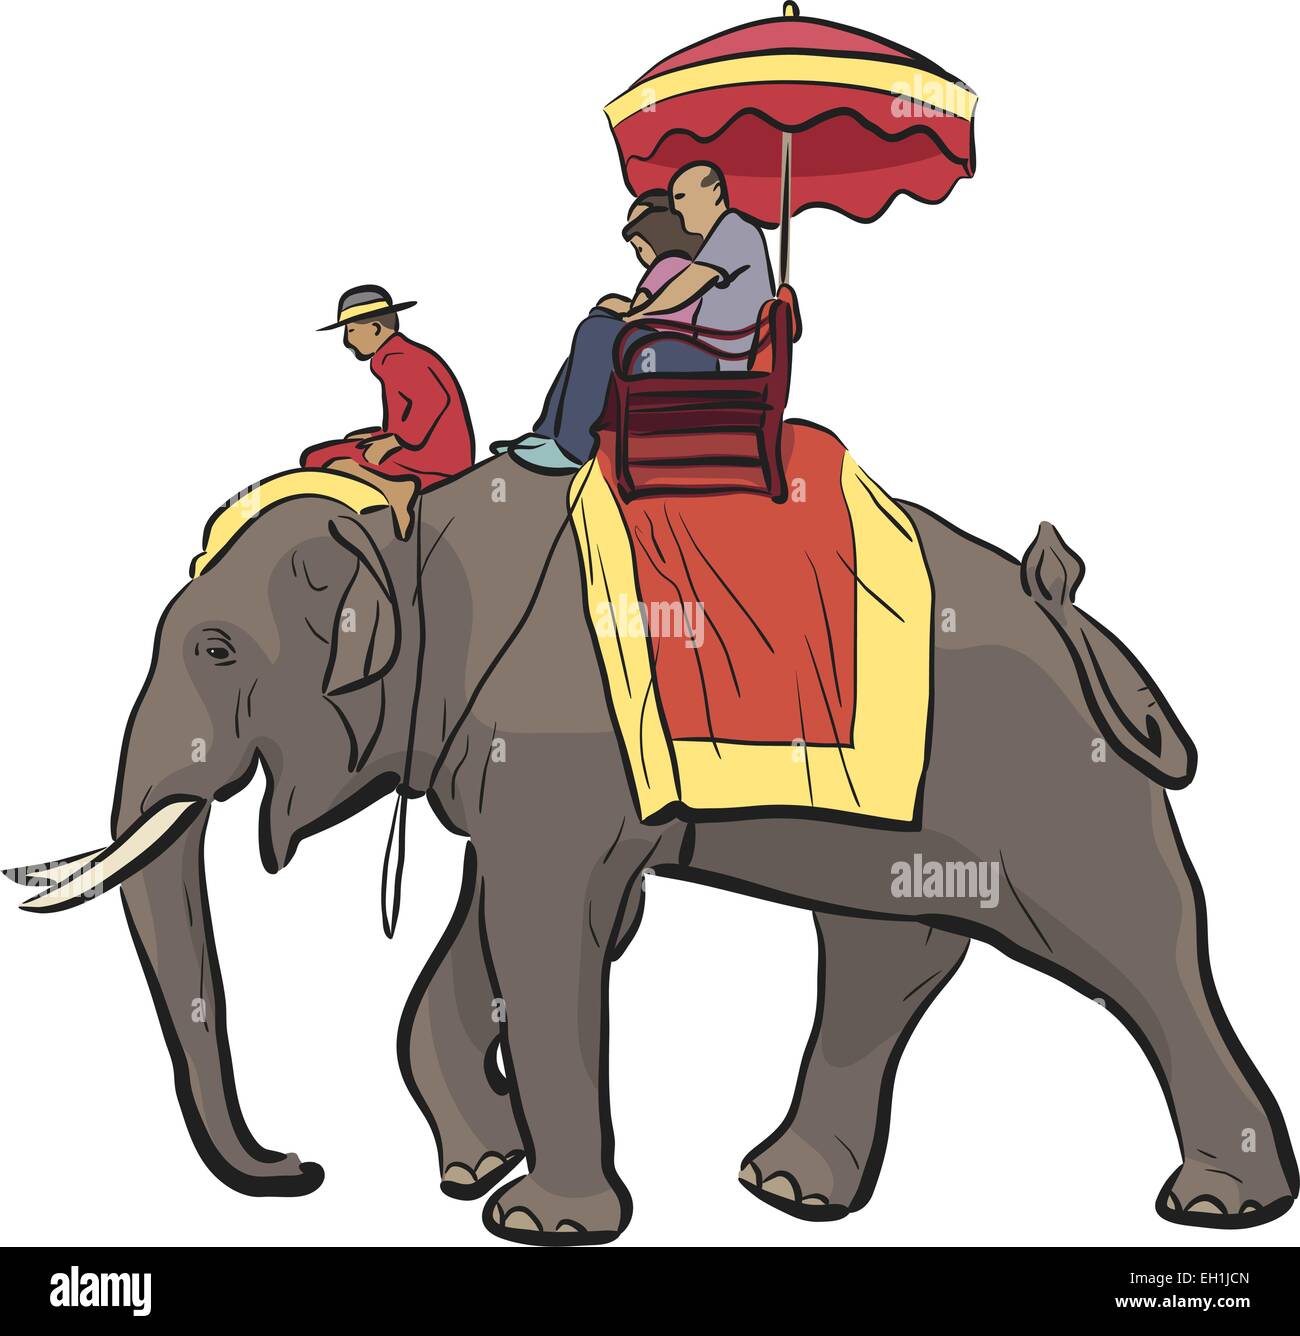 Bearbeitbares Vektor-Illustration von Touristen fahren auf einem asiatischen Elefanten mit mahout Stock Vektor